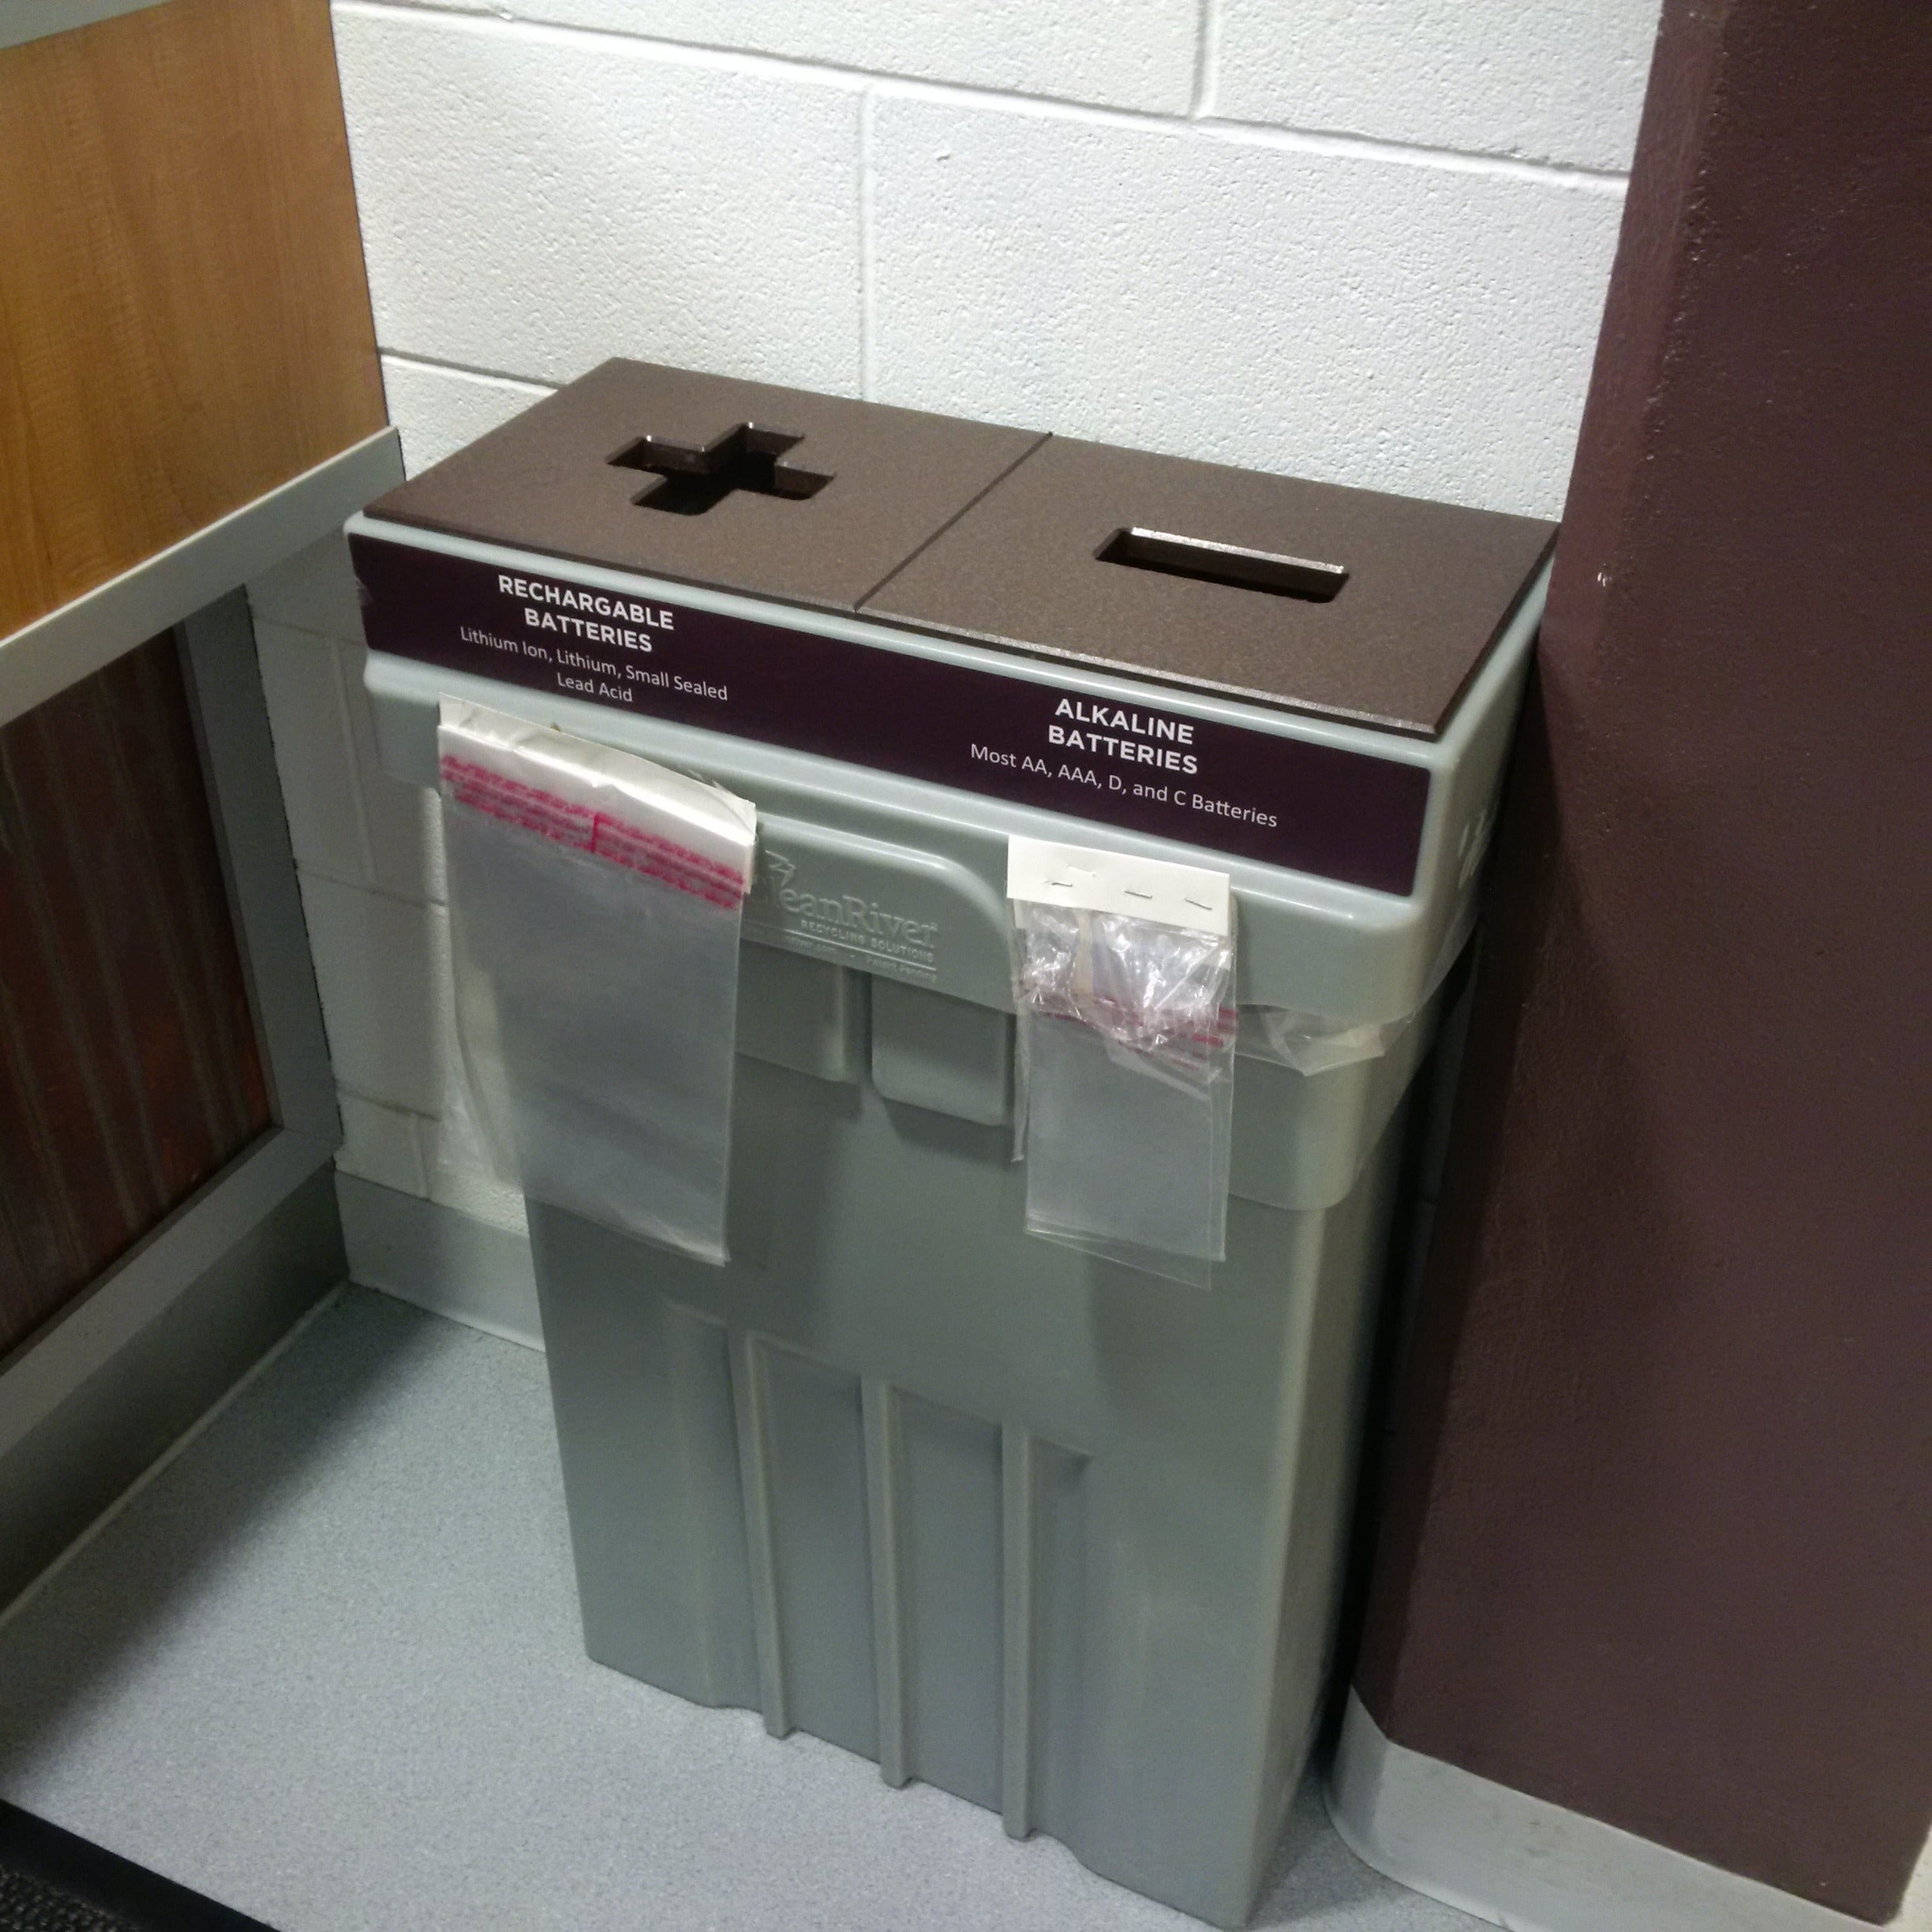 Battery recycling bin.